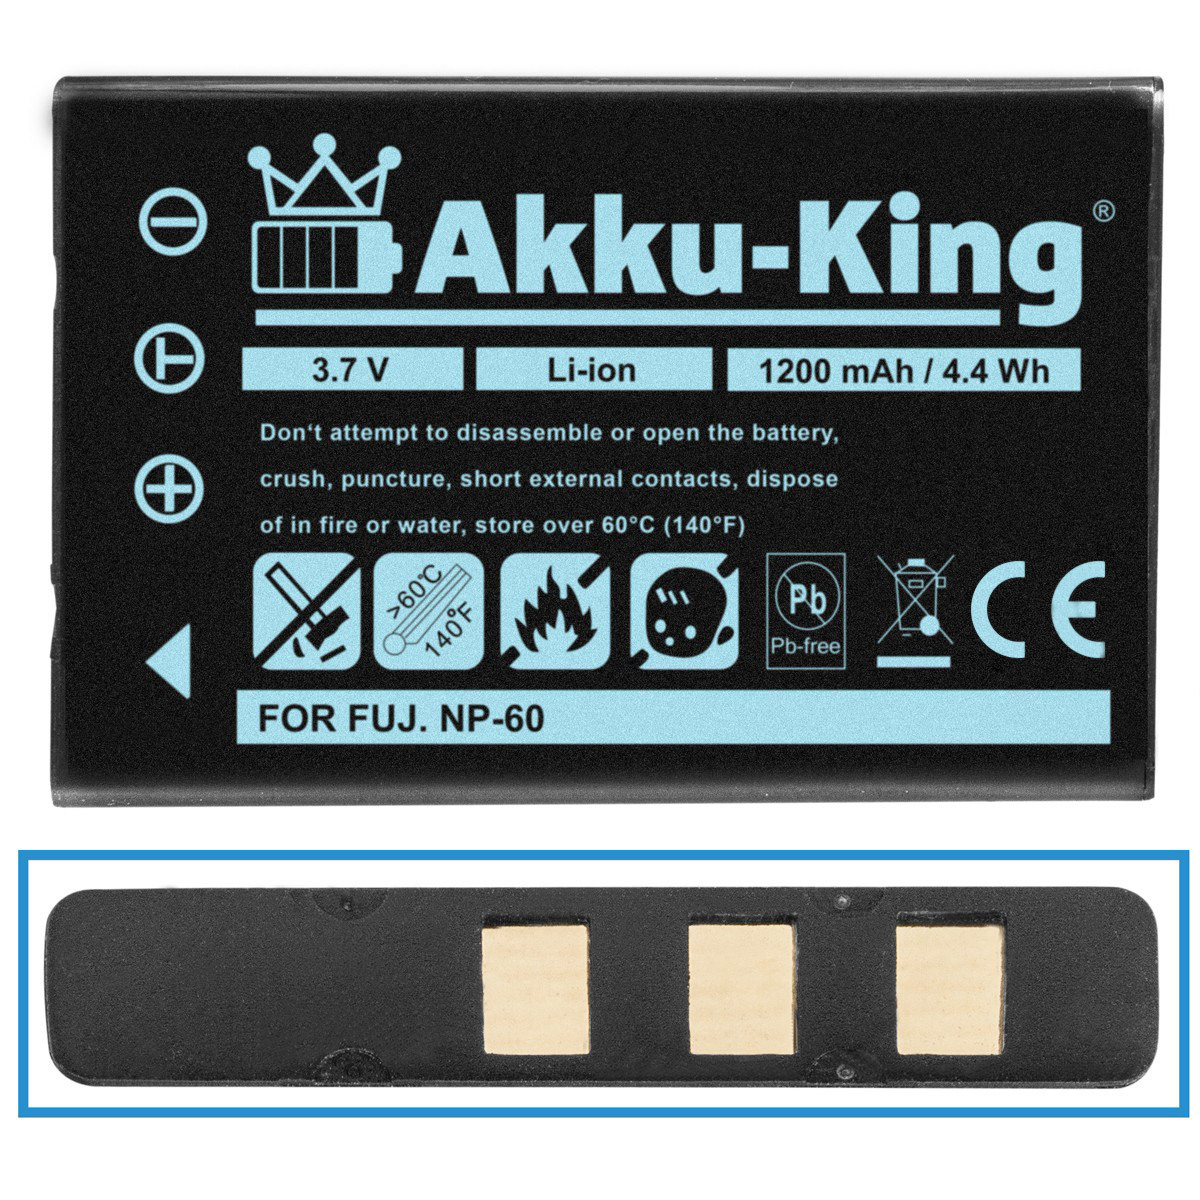 AKKU-KING Akku kompatibel mit Fuji Li-Ion NP-60 3.7 1200mAh Kamera-Akku, Volt